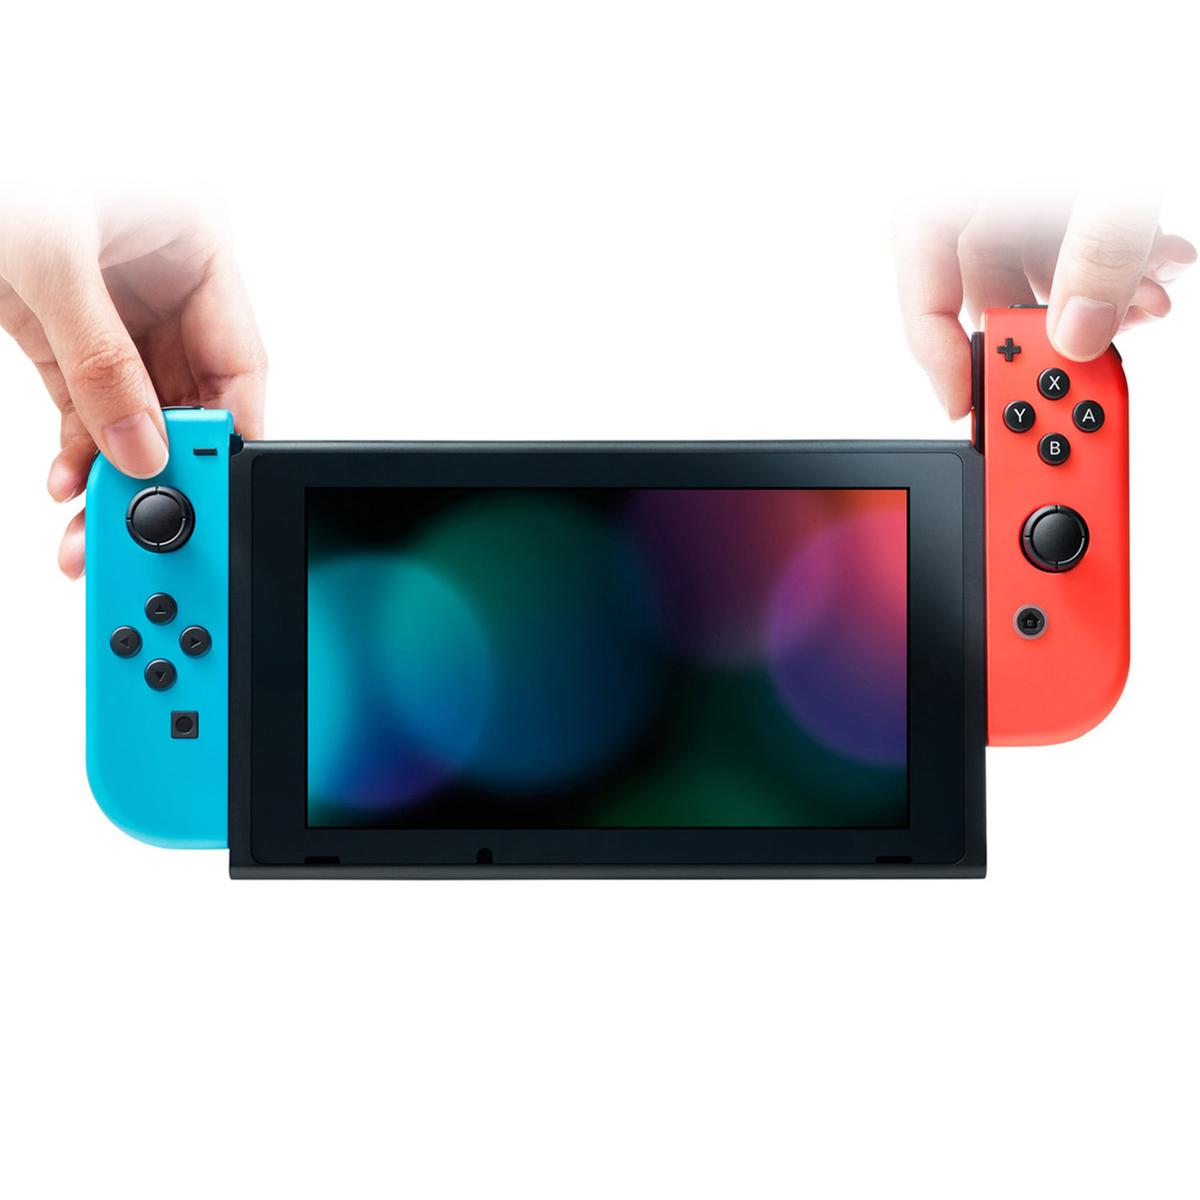 Aislante amanecer Noticias de última hora Nintendo Switch - Consola Azul y Rojo Neón | Hardware | Toys"R"Us España